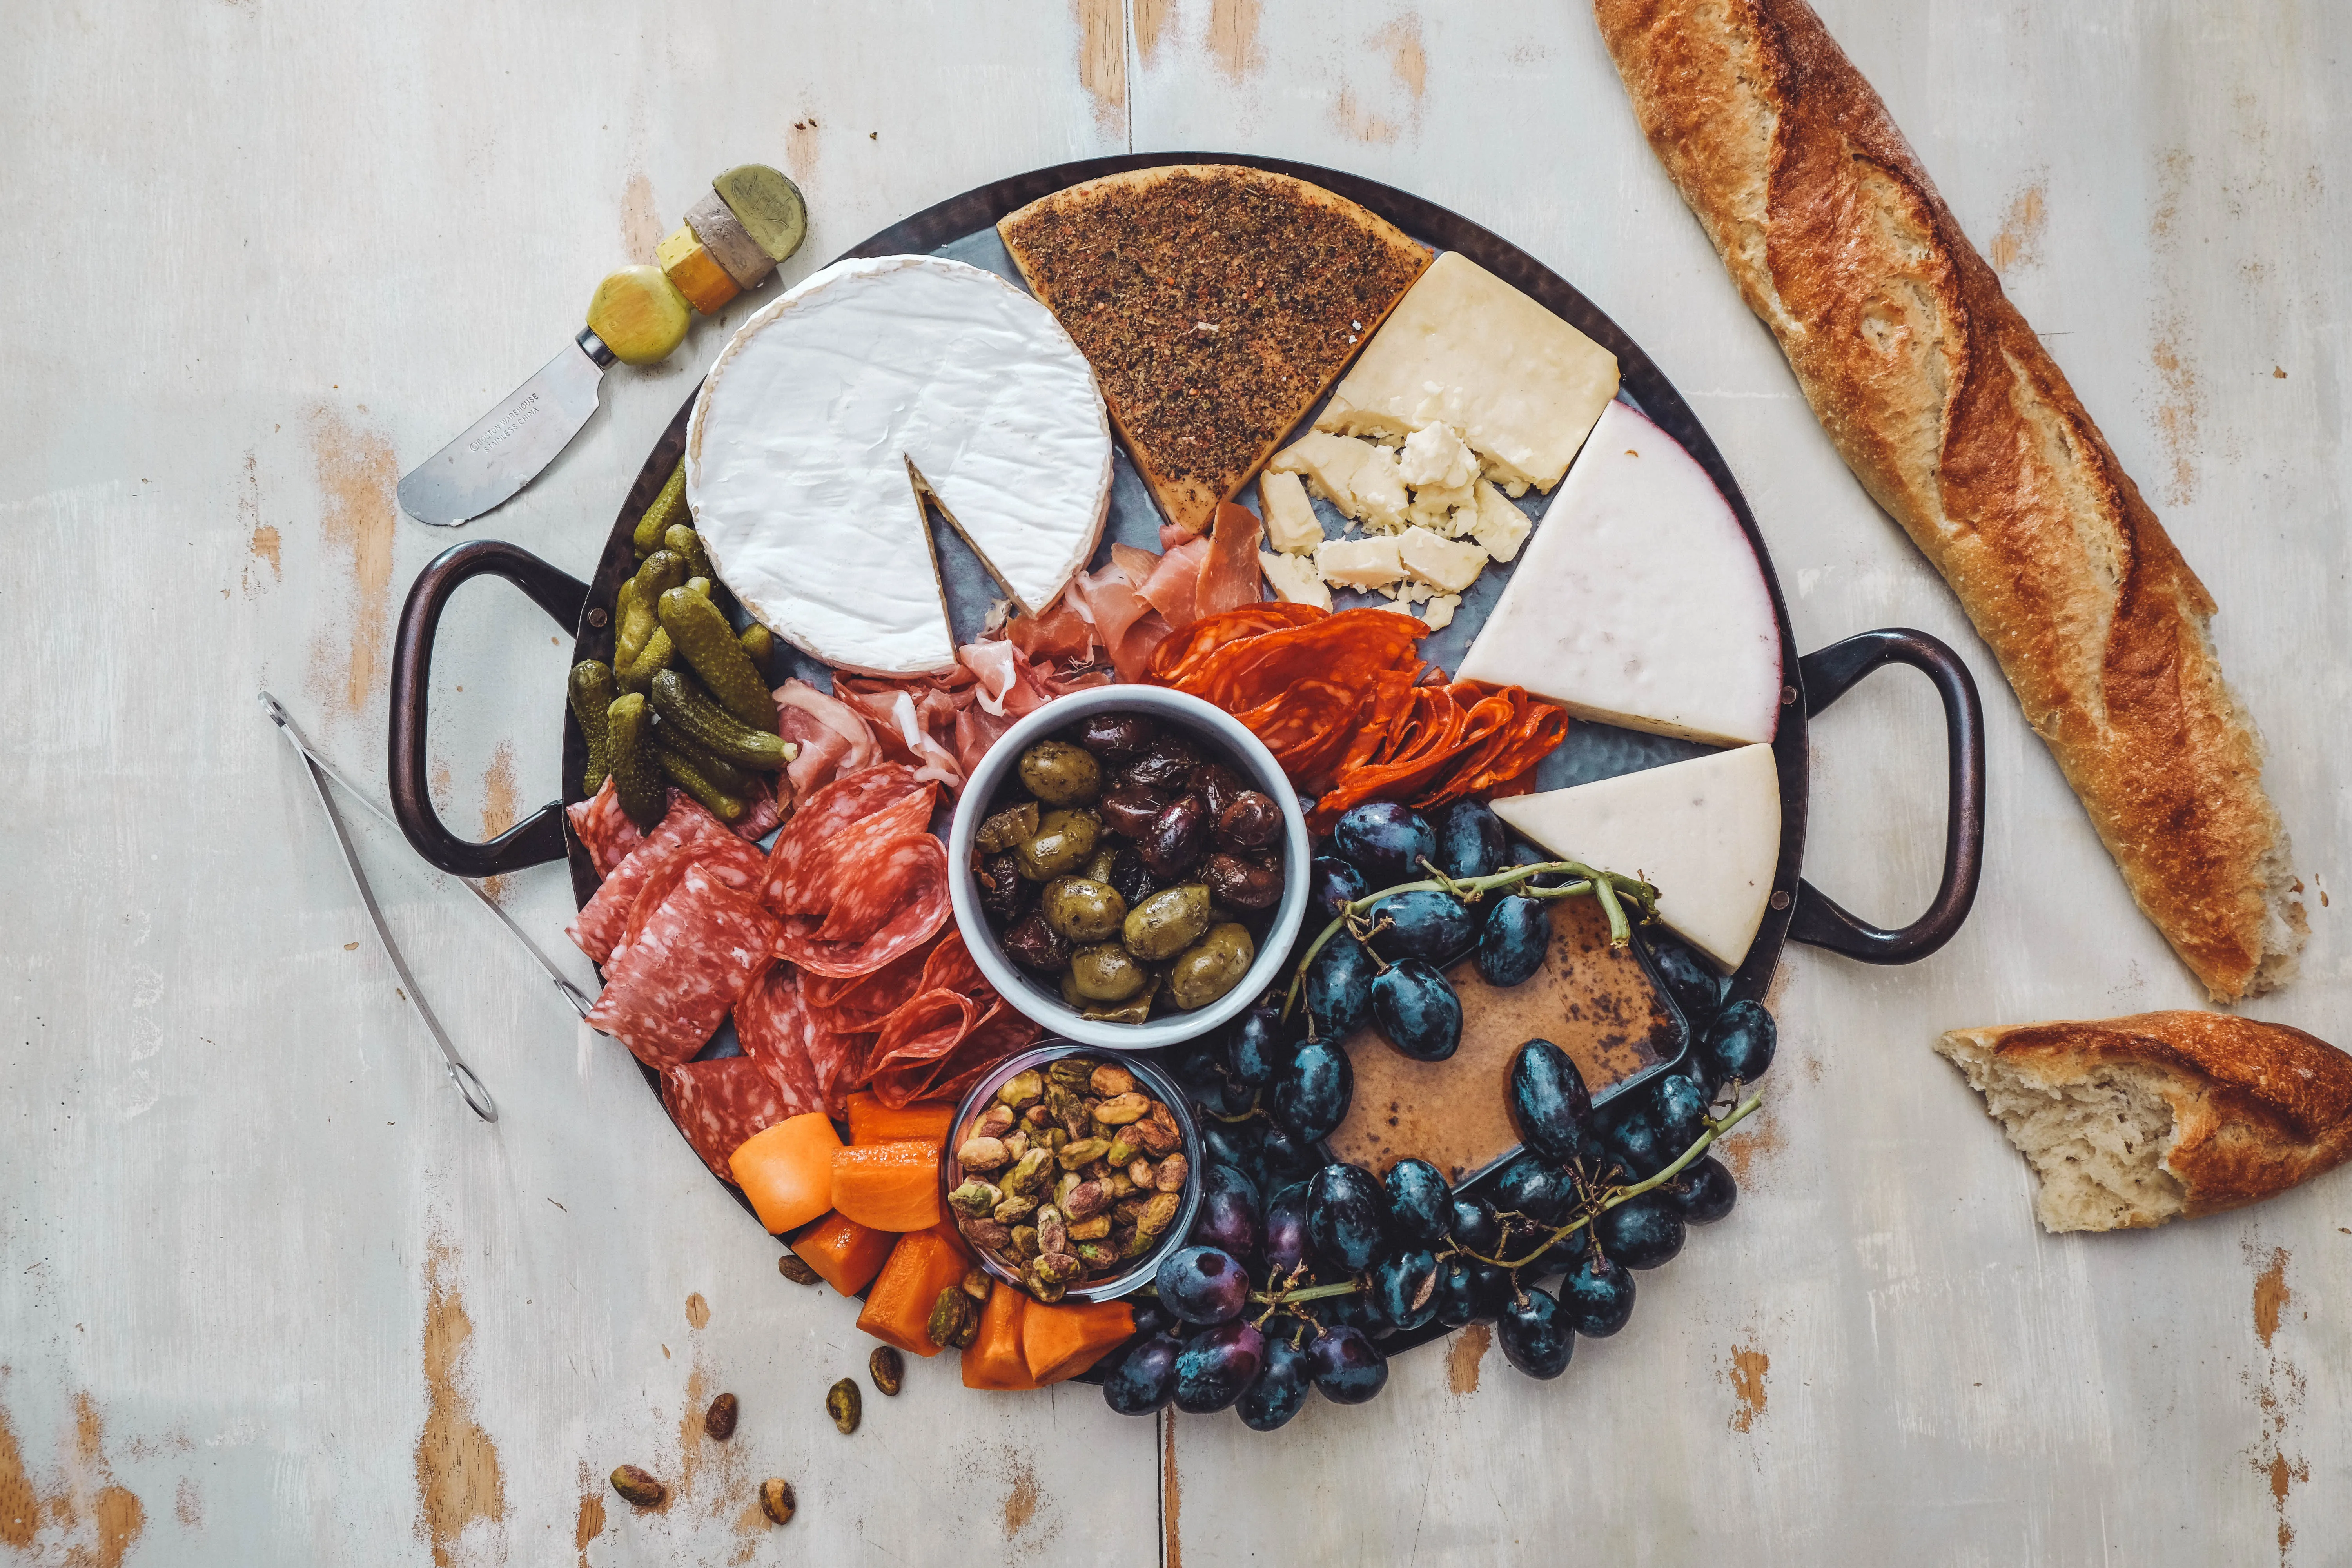 Käse, Brot, Wurst, Essiggurken, Oliven, Weintrauben und andere Dinge auf einem Teller